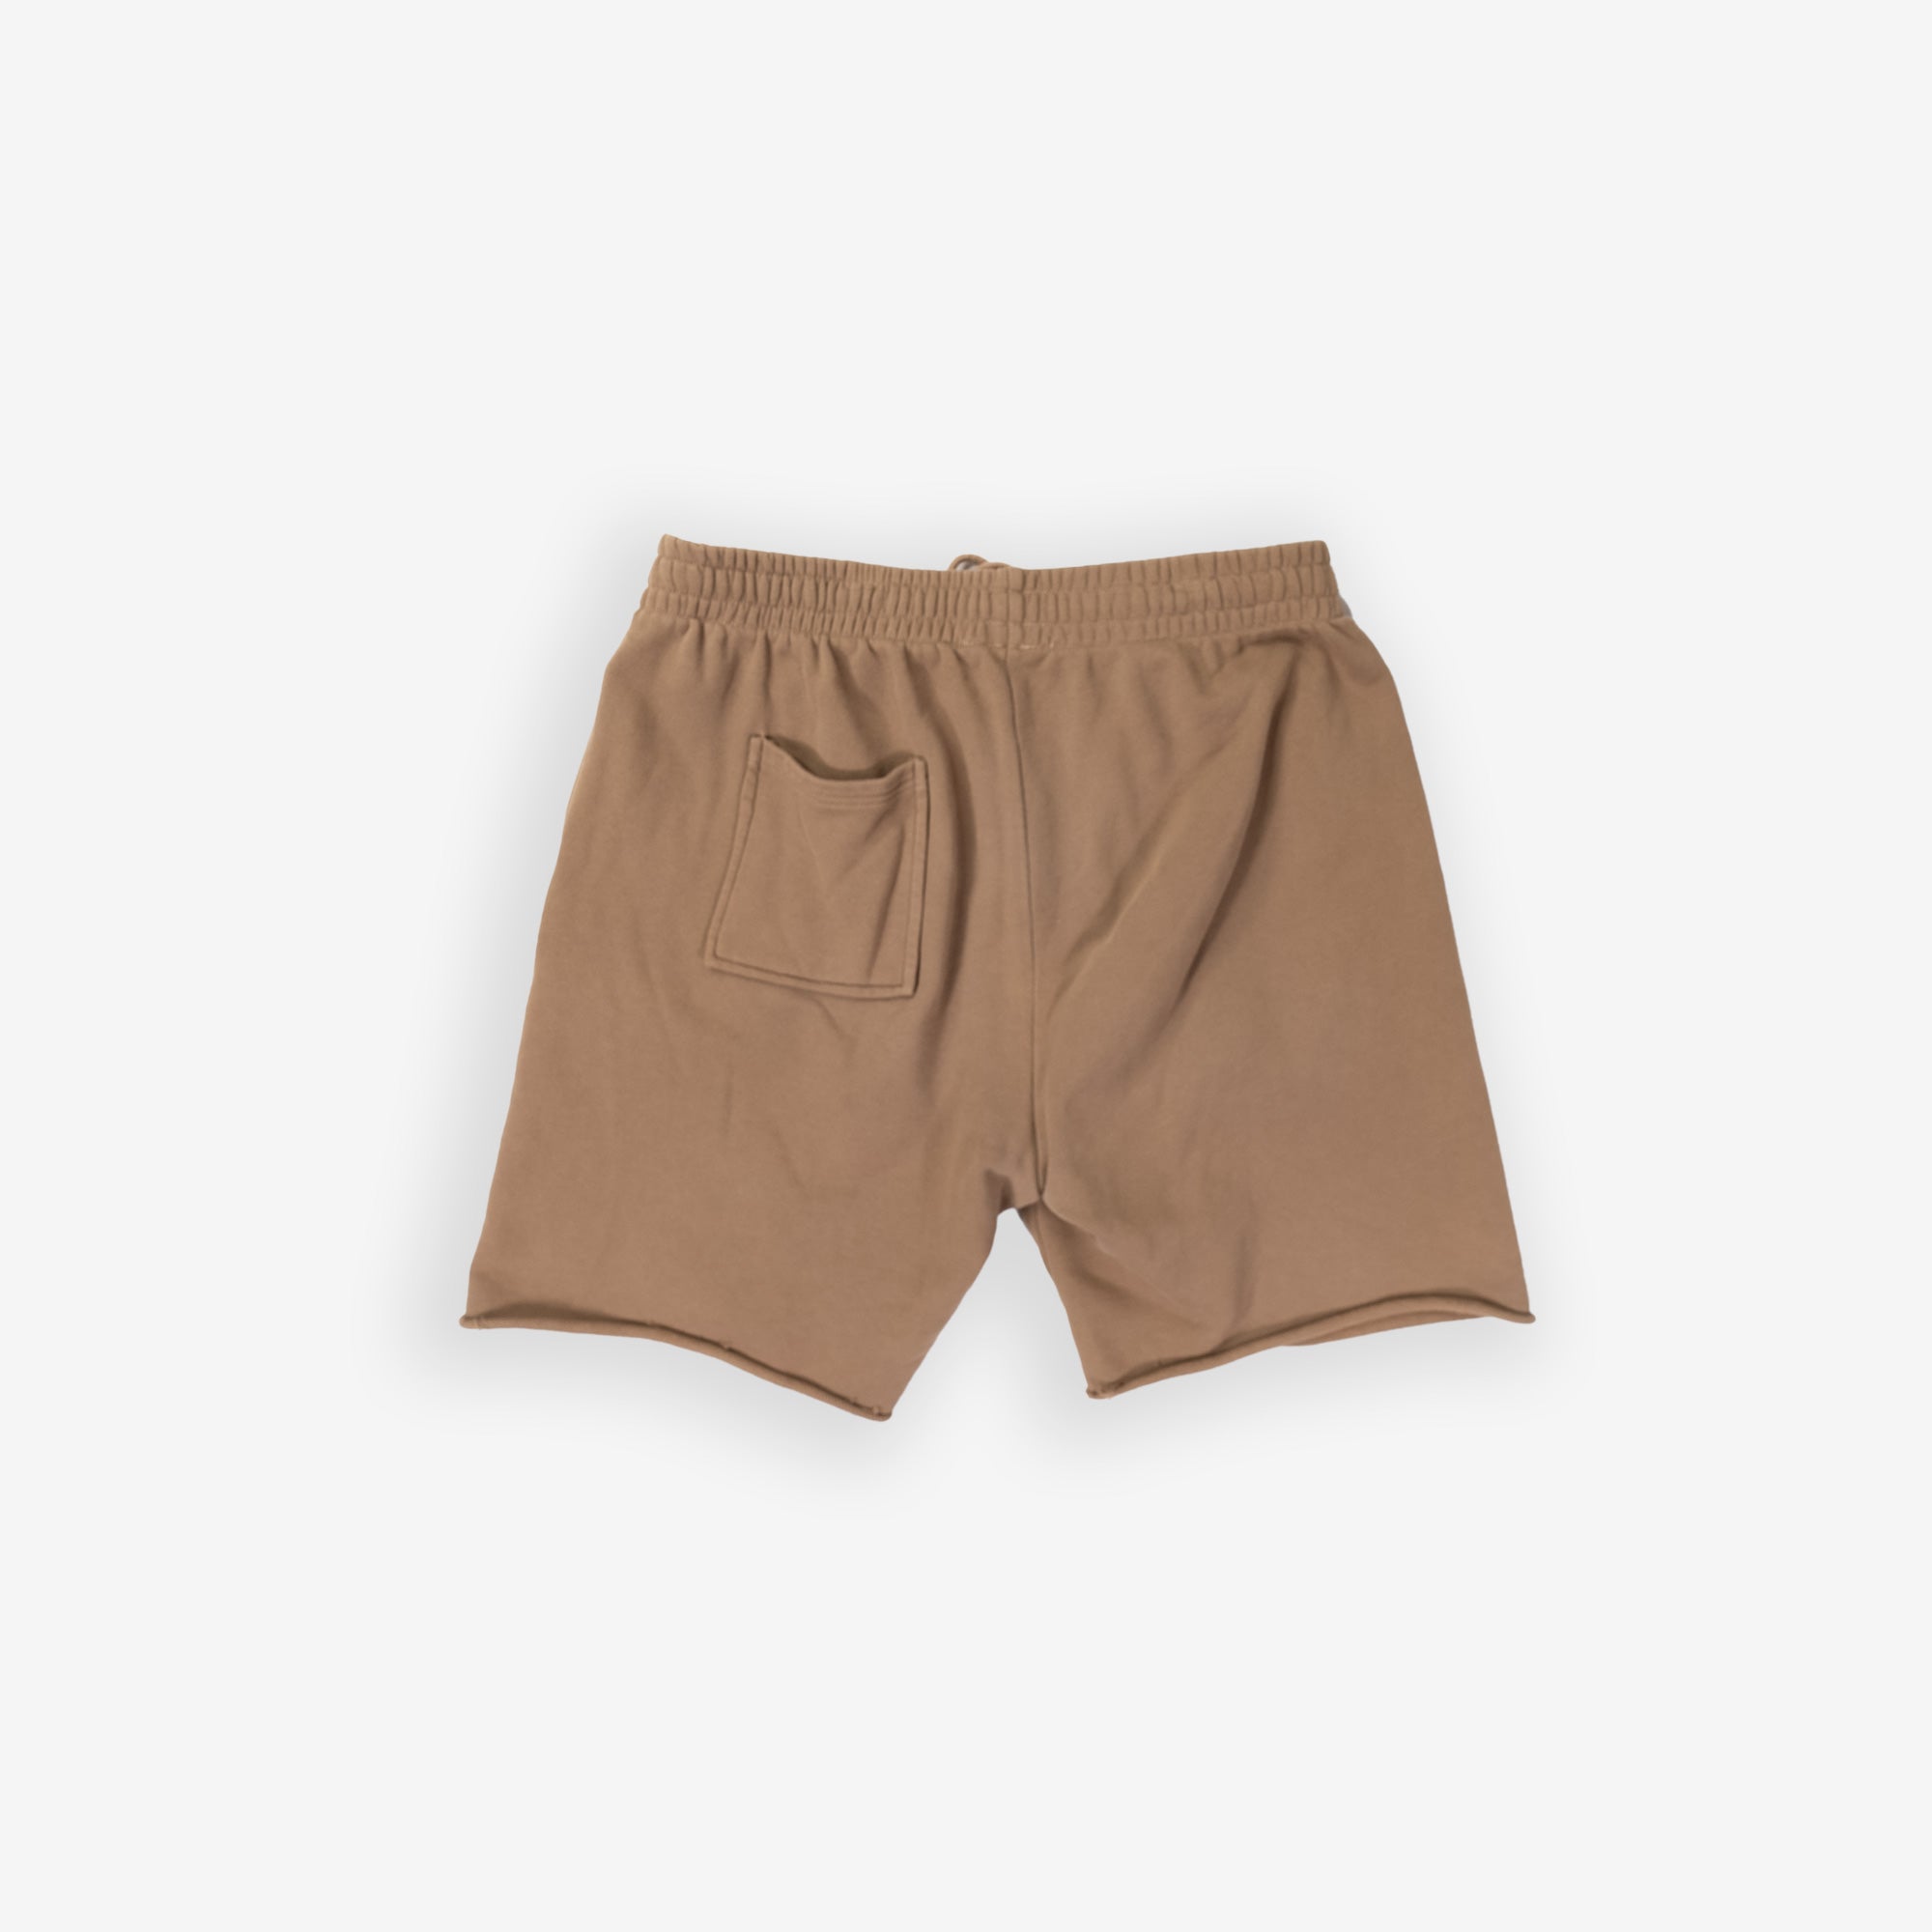 Camel Shorts - LimnClothing